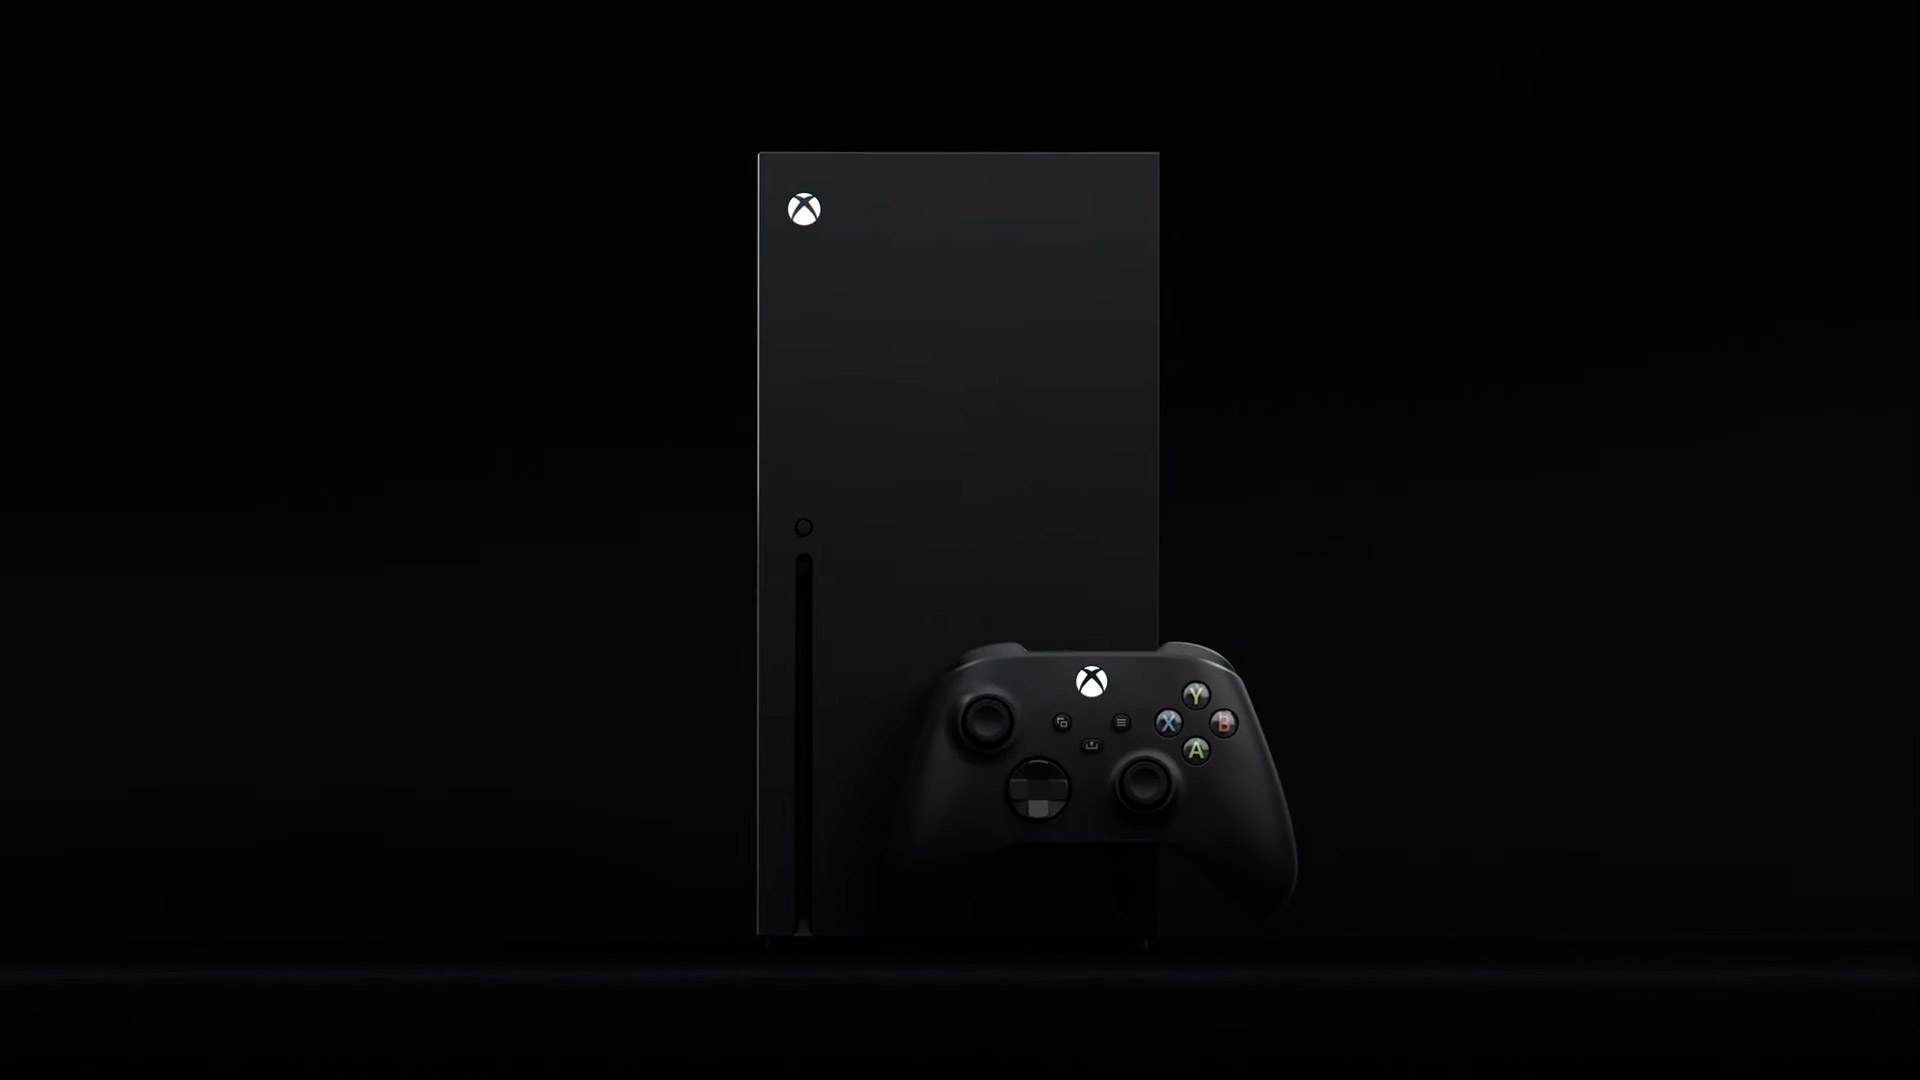 Tgs 2020 дээр Xbox Showcase шинэ дараагийн үеийн дэлгэрэнгүй мэдээлэлгүй болно